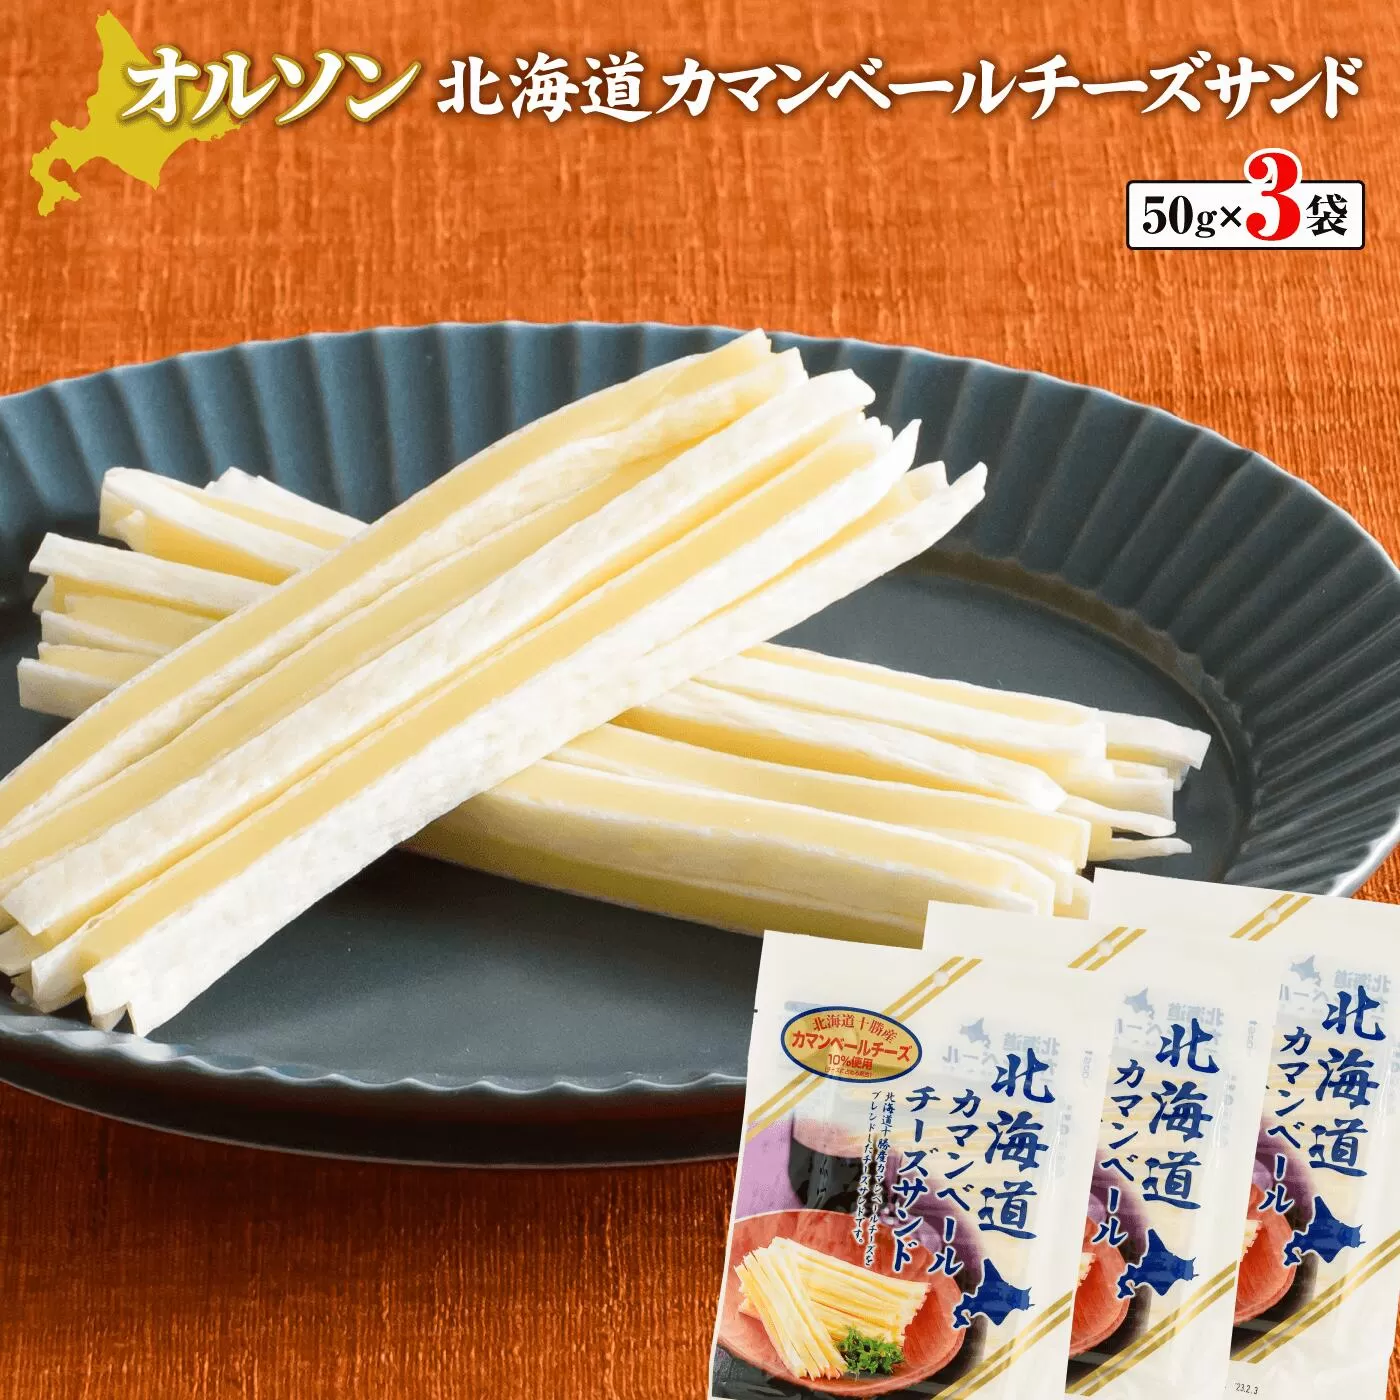 北海道カマンベールチーズサンド 50g×3袋《北海道恵庭市》【04011】